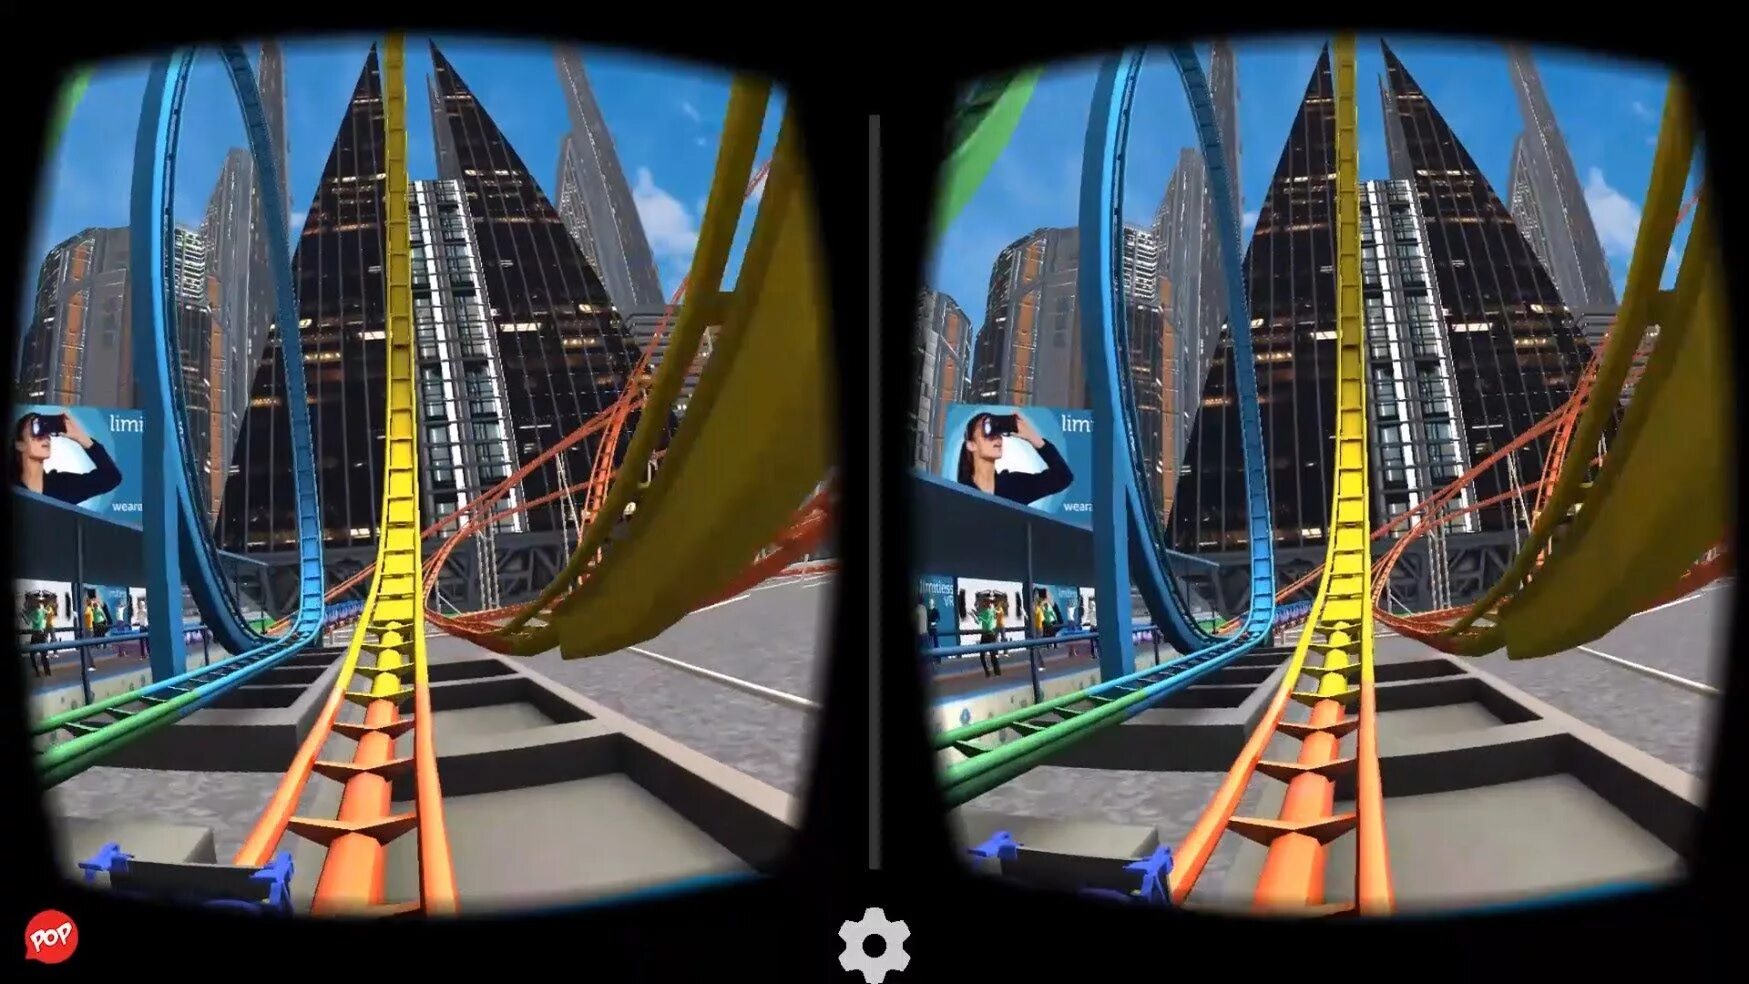 Сайт 3д видео. VR американские горки 360 для ВР очков. VR 9d 360 аттракцион. Американские горки на ps4 VR Rollercoaster Legends. Американские горки Rollercoaster в Oculus VR.